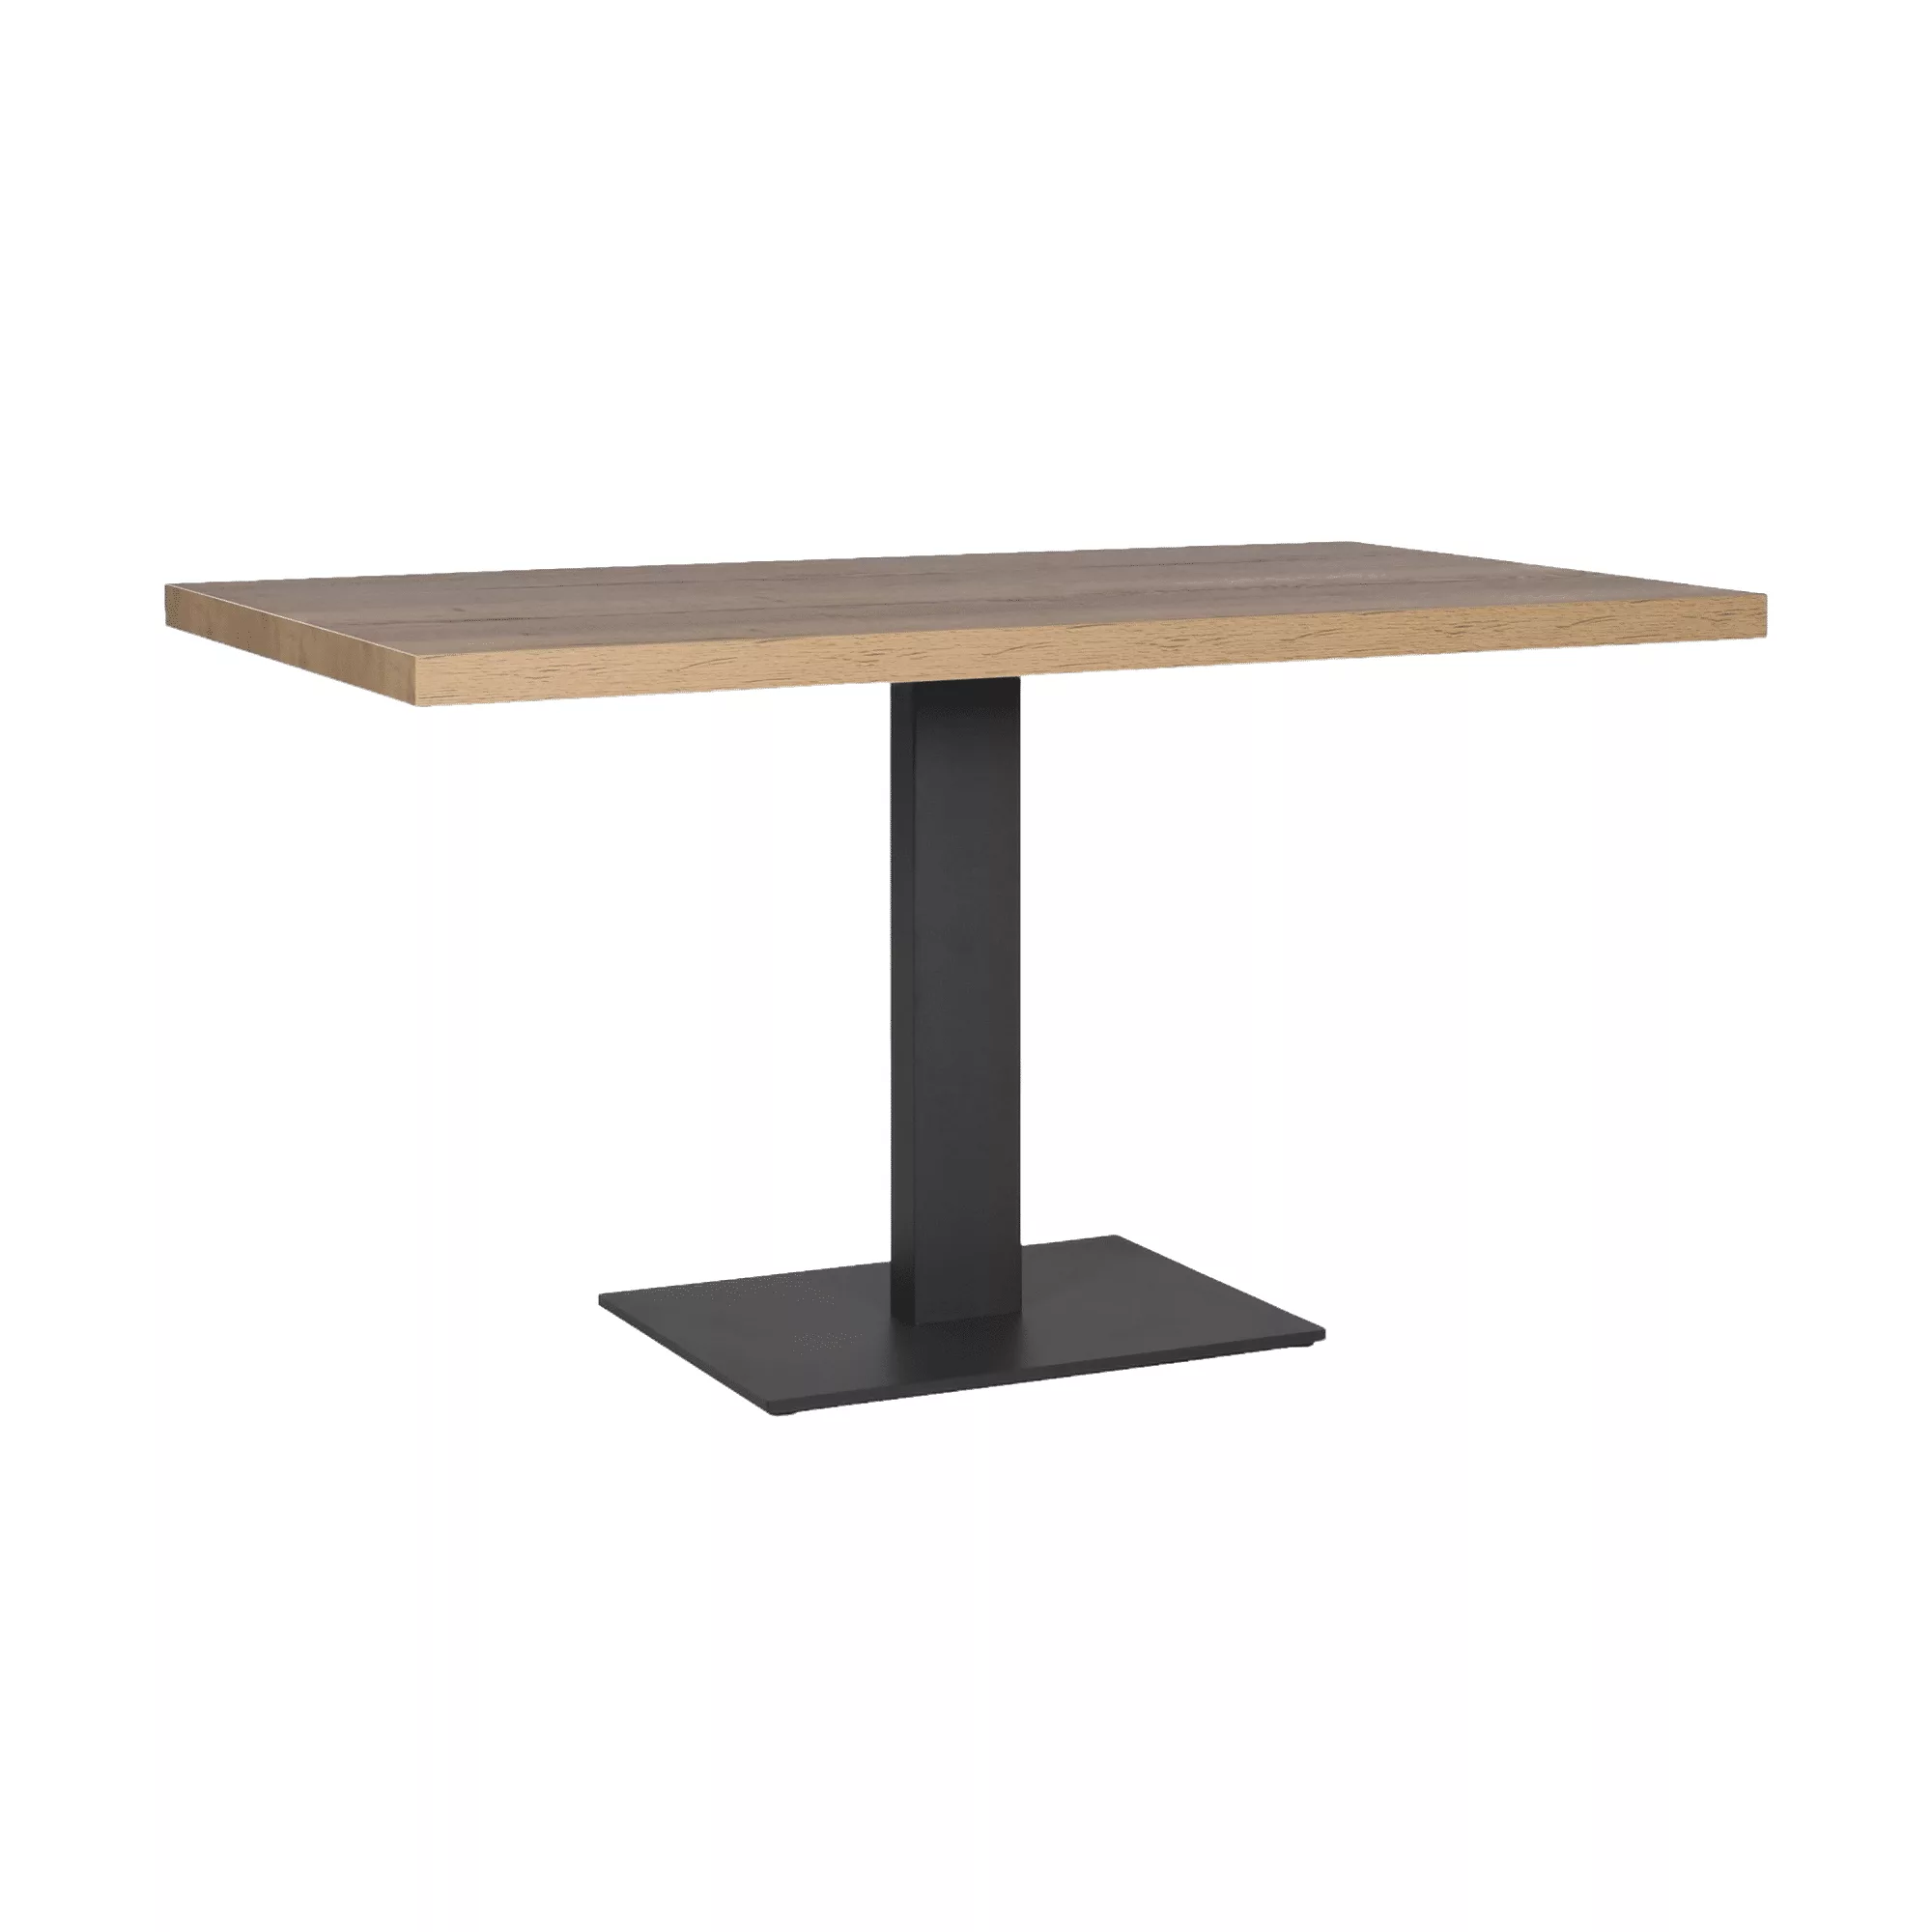 Tafel met zwart metalen onderstel en houten tafelblad.